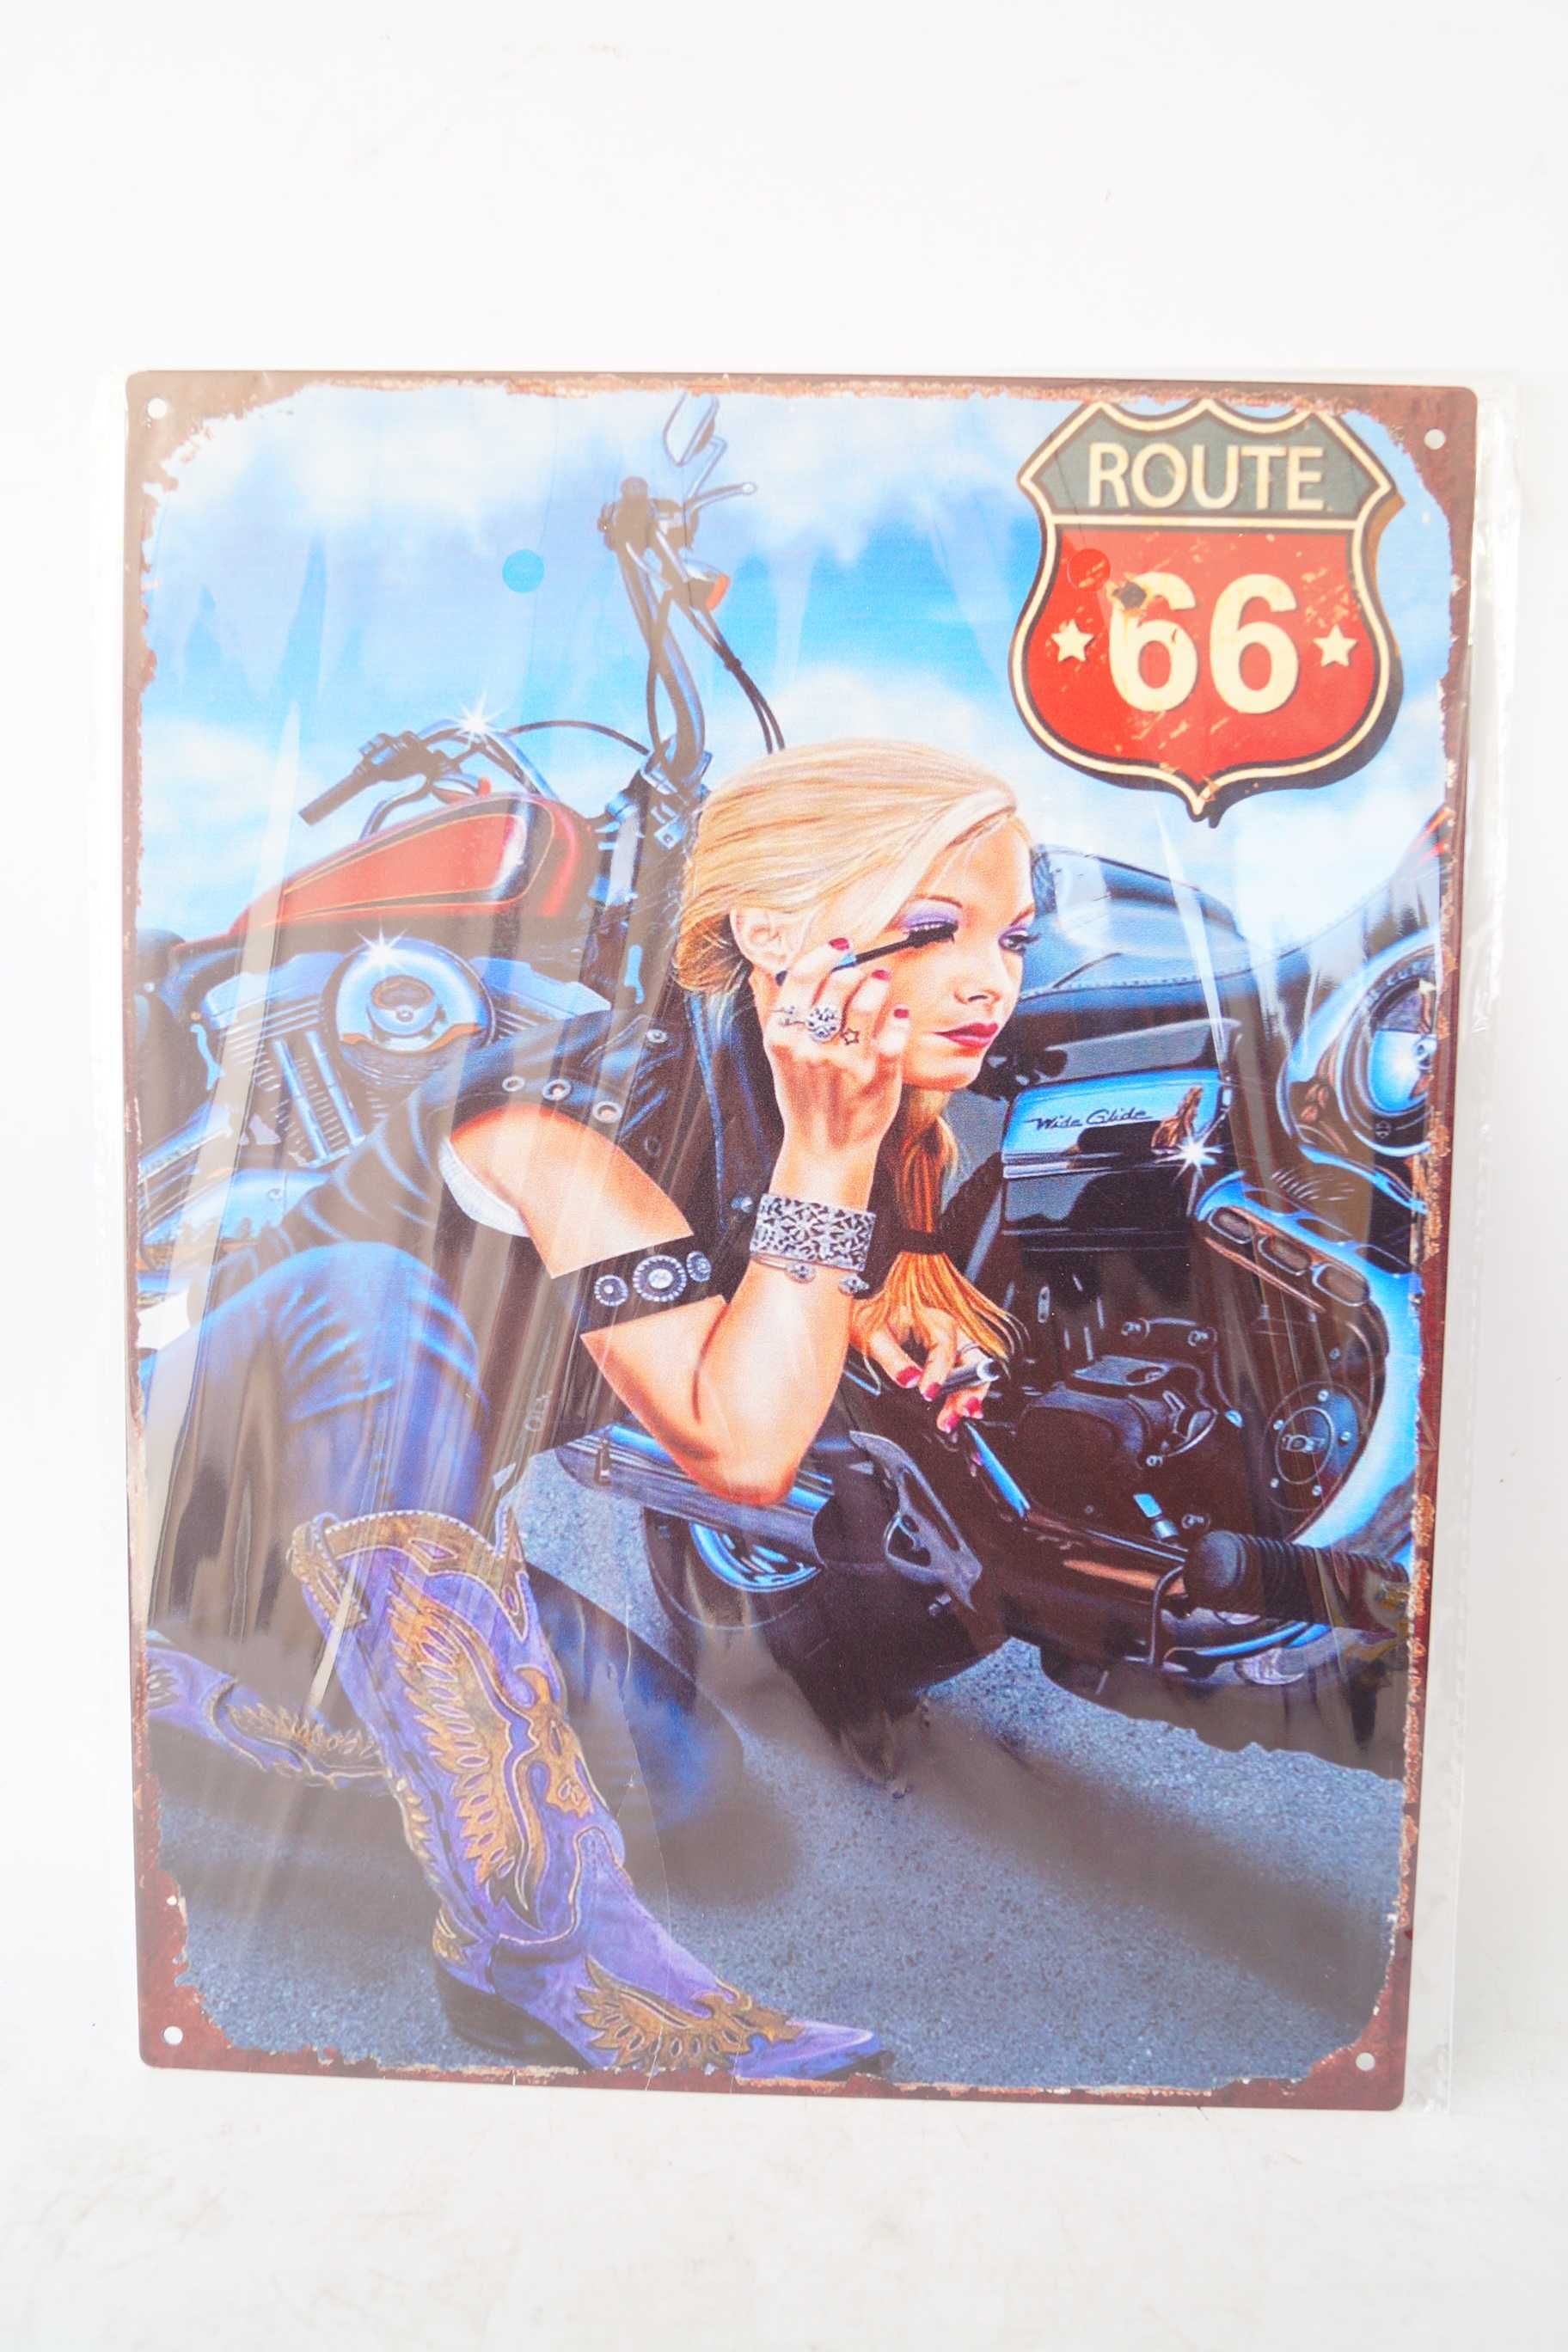 Plakat szyld metalowy 33/25 cm Route 66 Kobieta harley